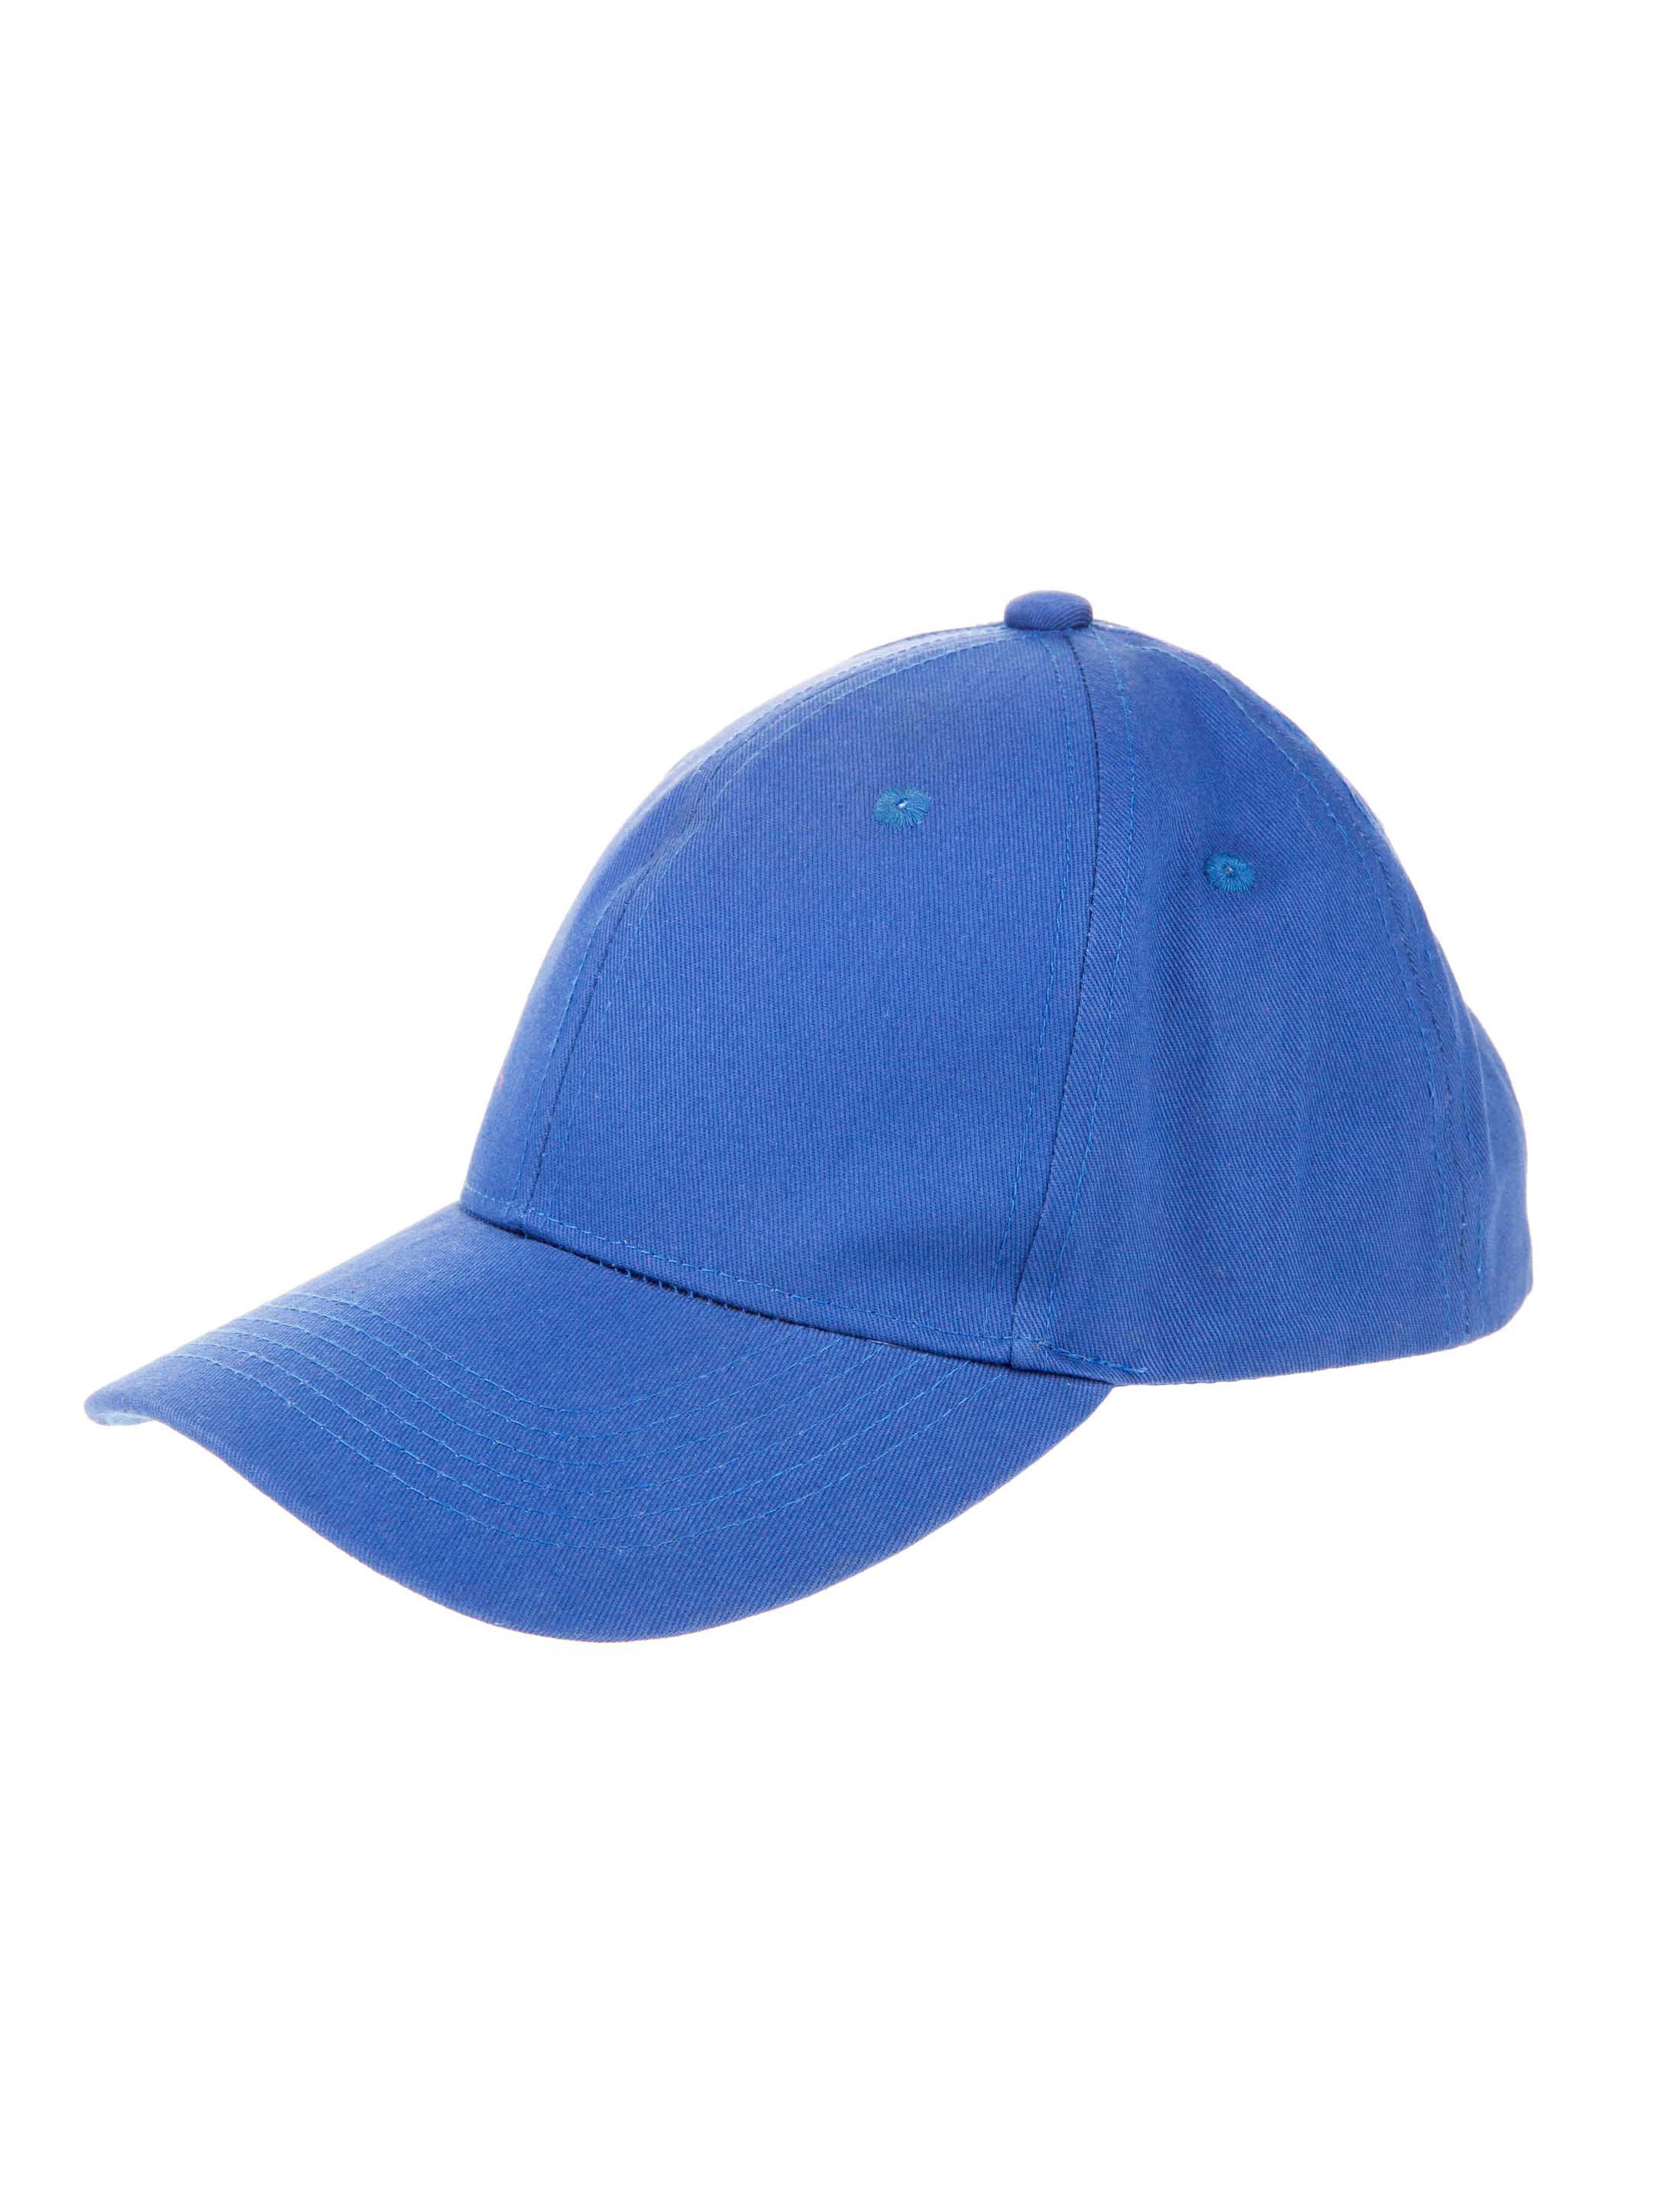 Baseball Cap blau one size